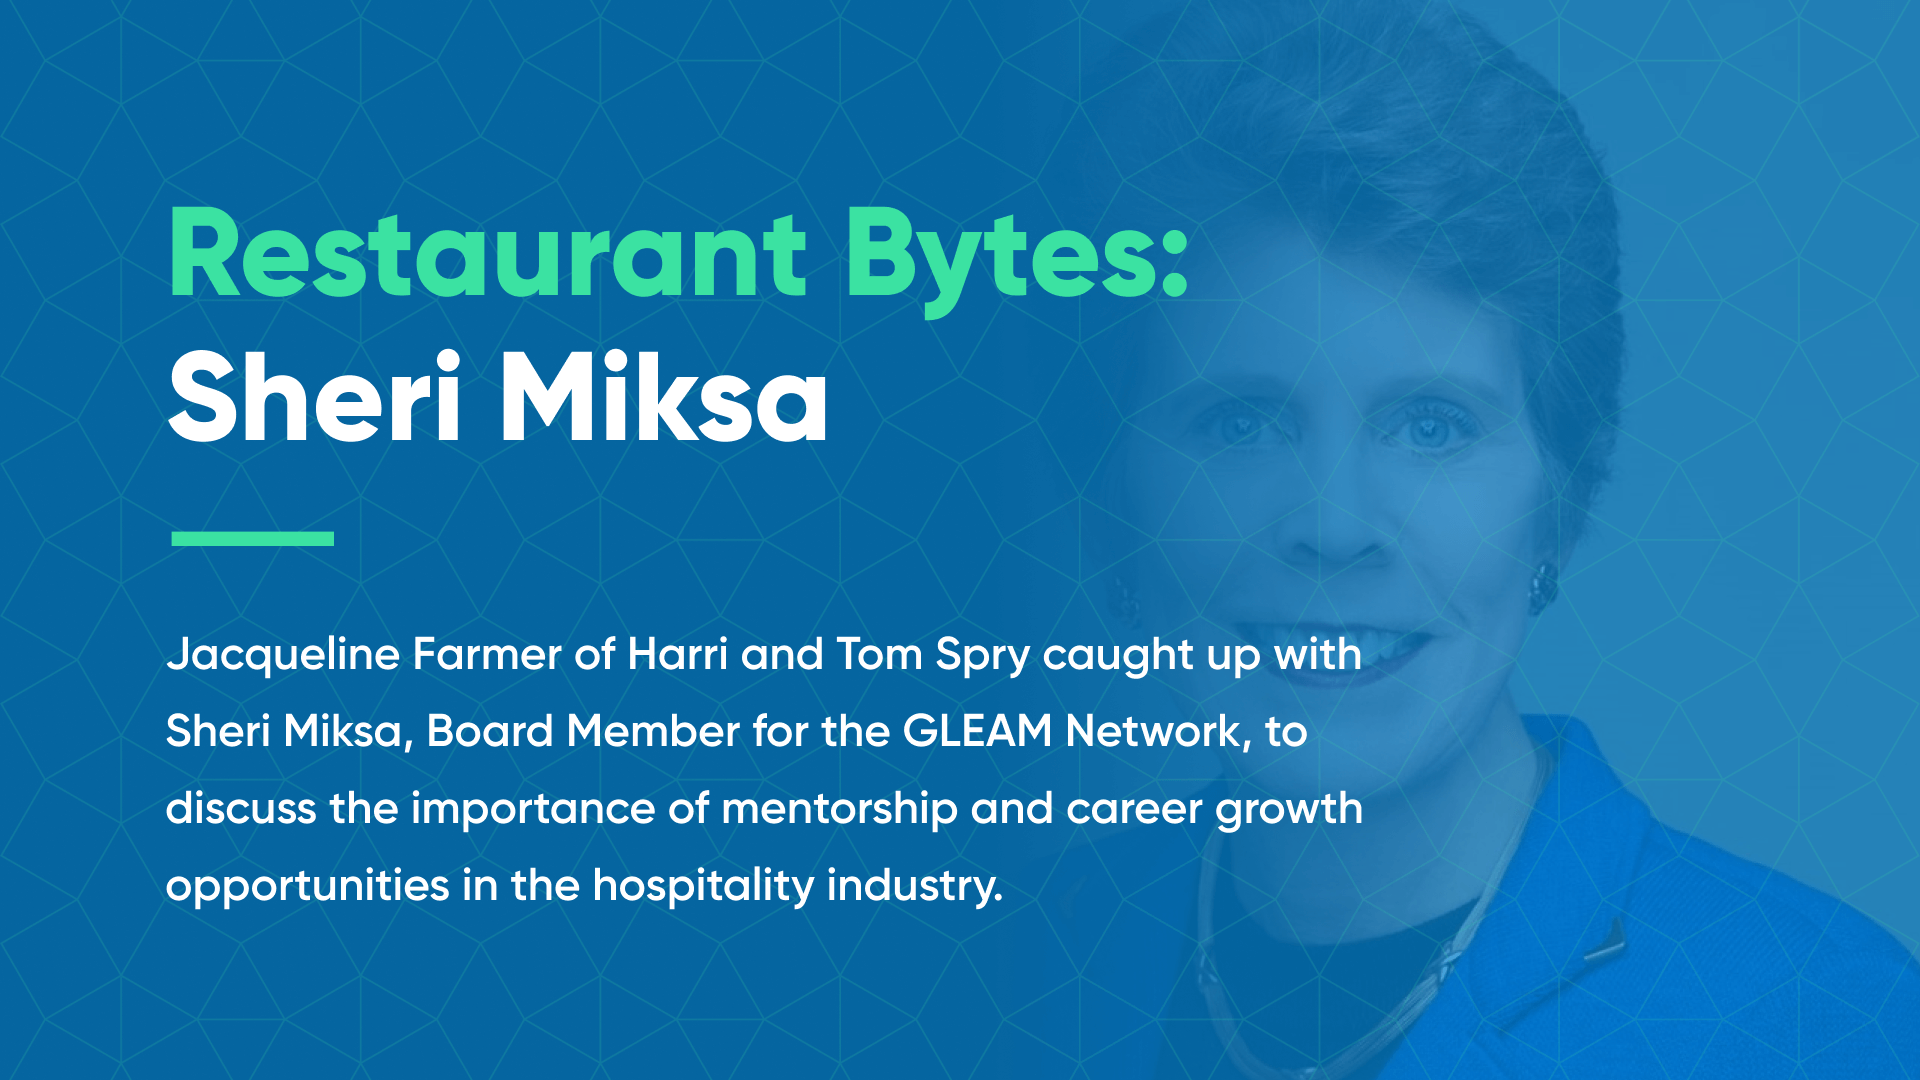 Restaurant Bytes Sheri Miksa hospitality industry mentorships